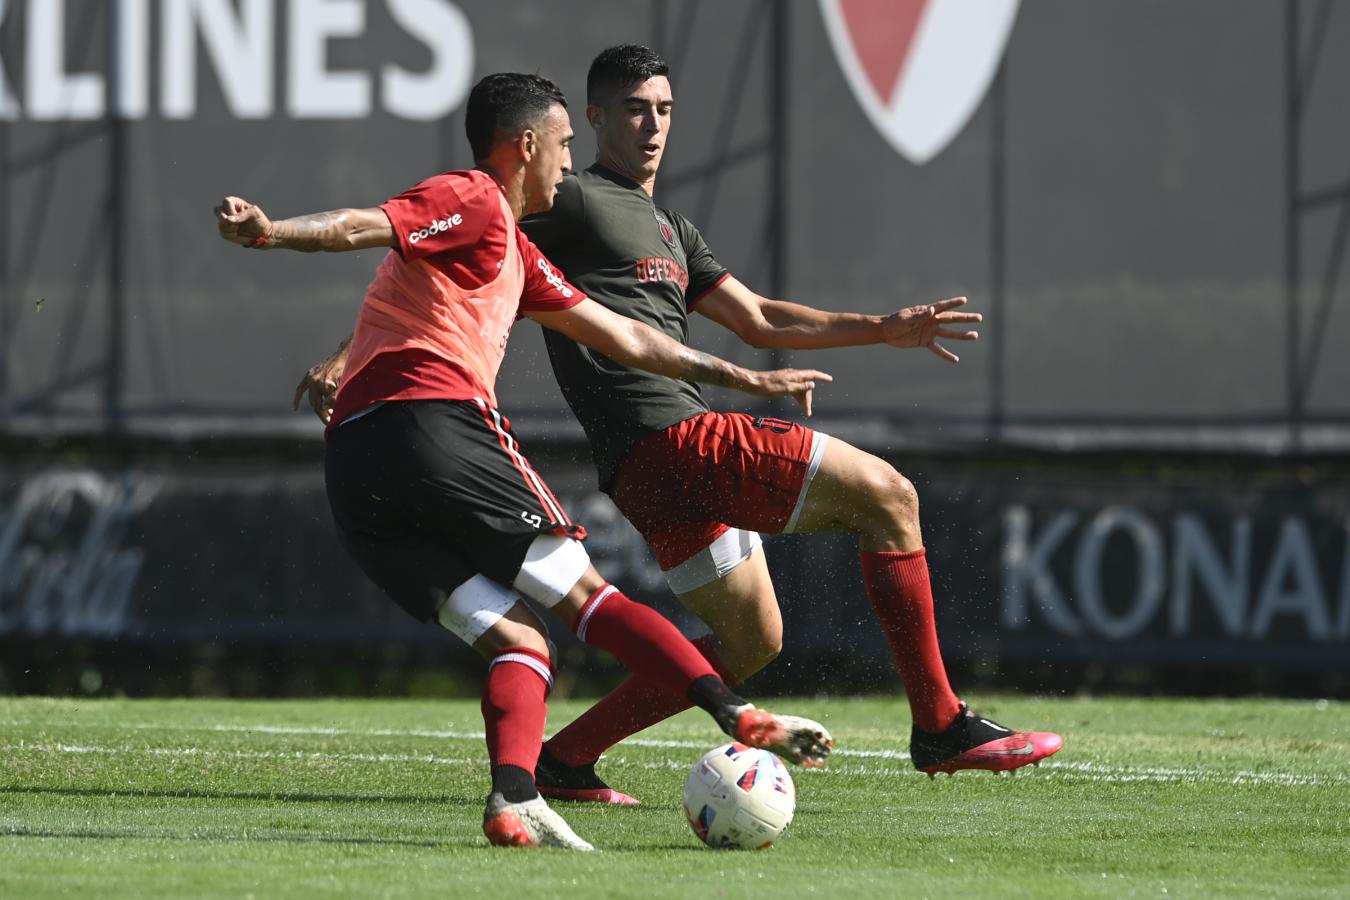 Imagen Suárez en acción en el último amistoso entre River y Defensores de Belgrano, en el cual marcó un tanto. Foto: Prensa CARP